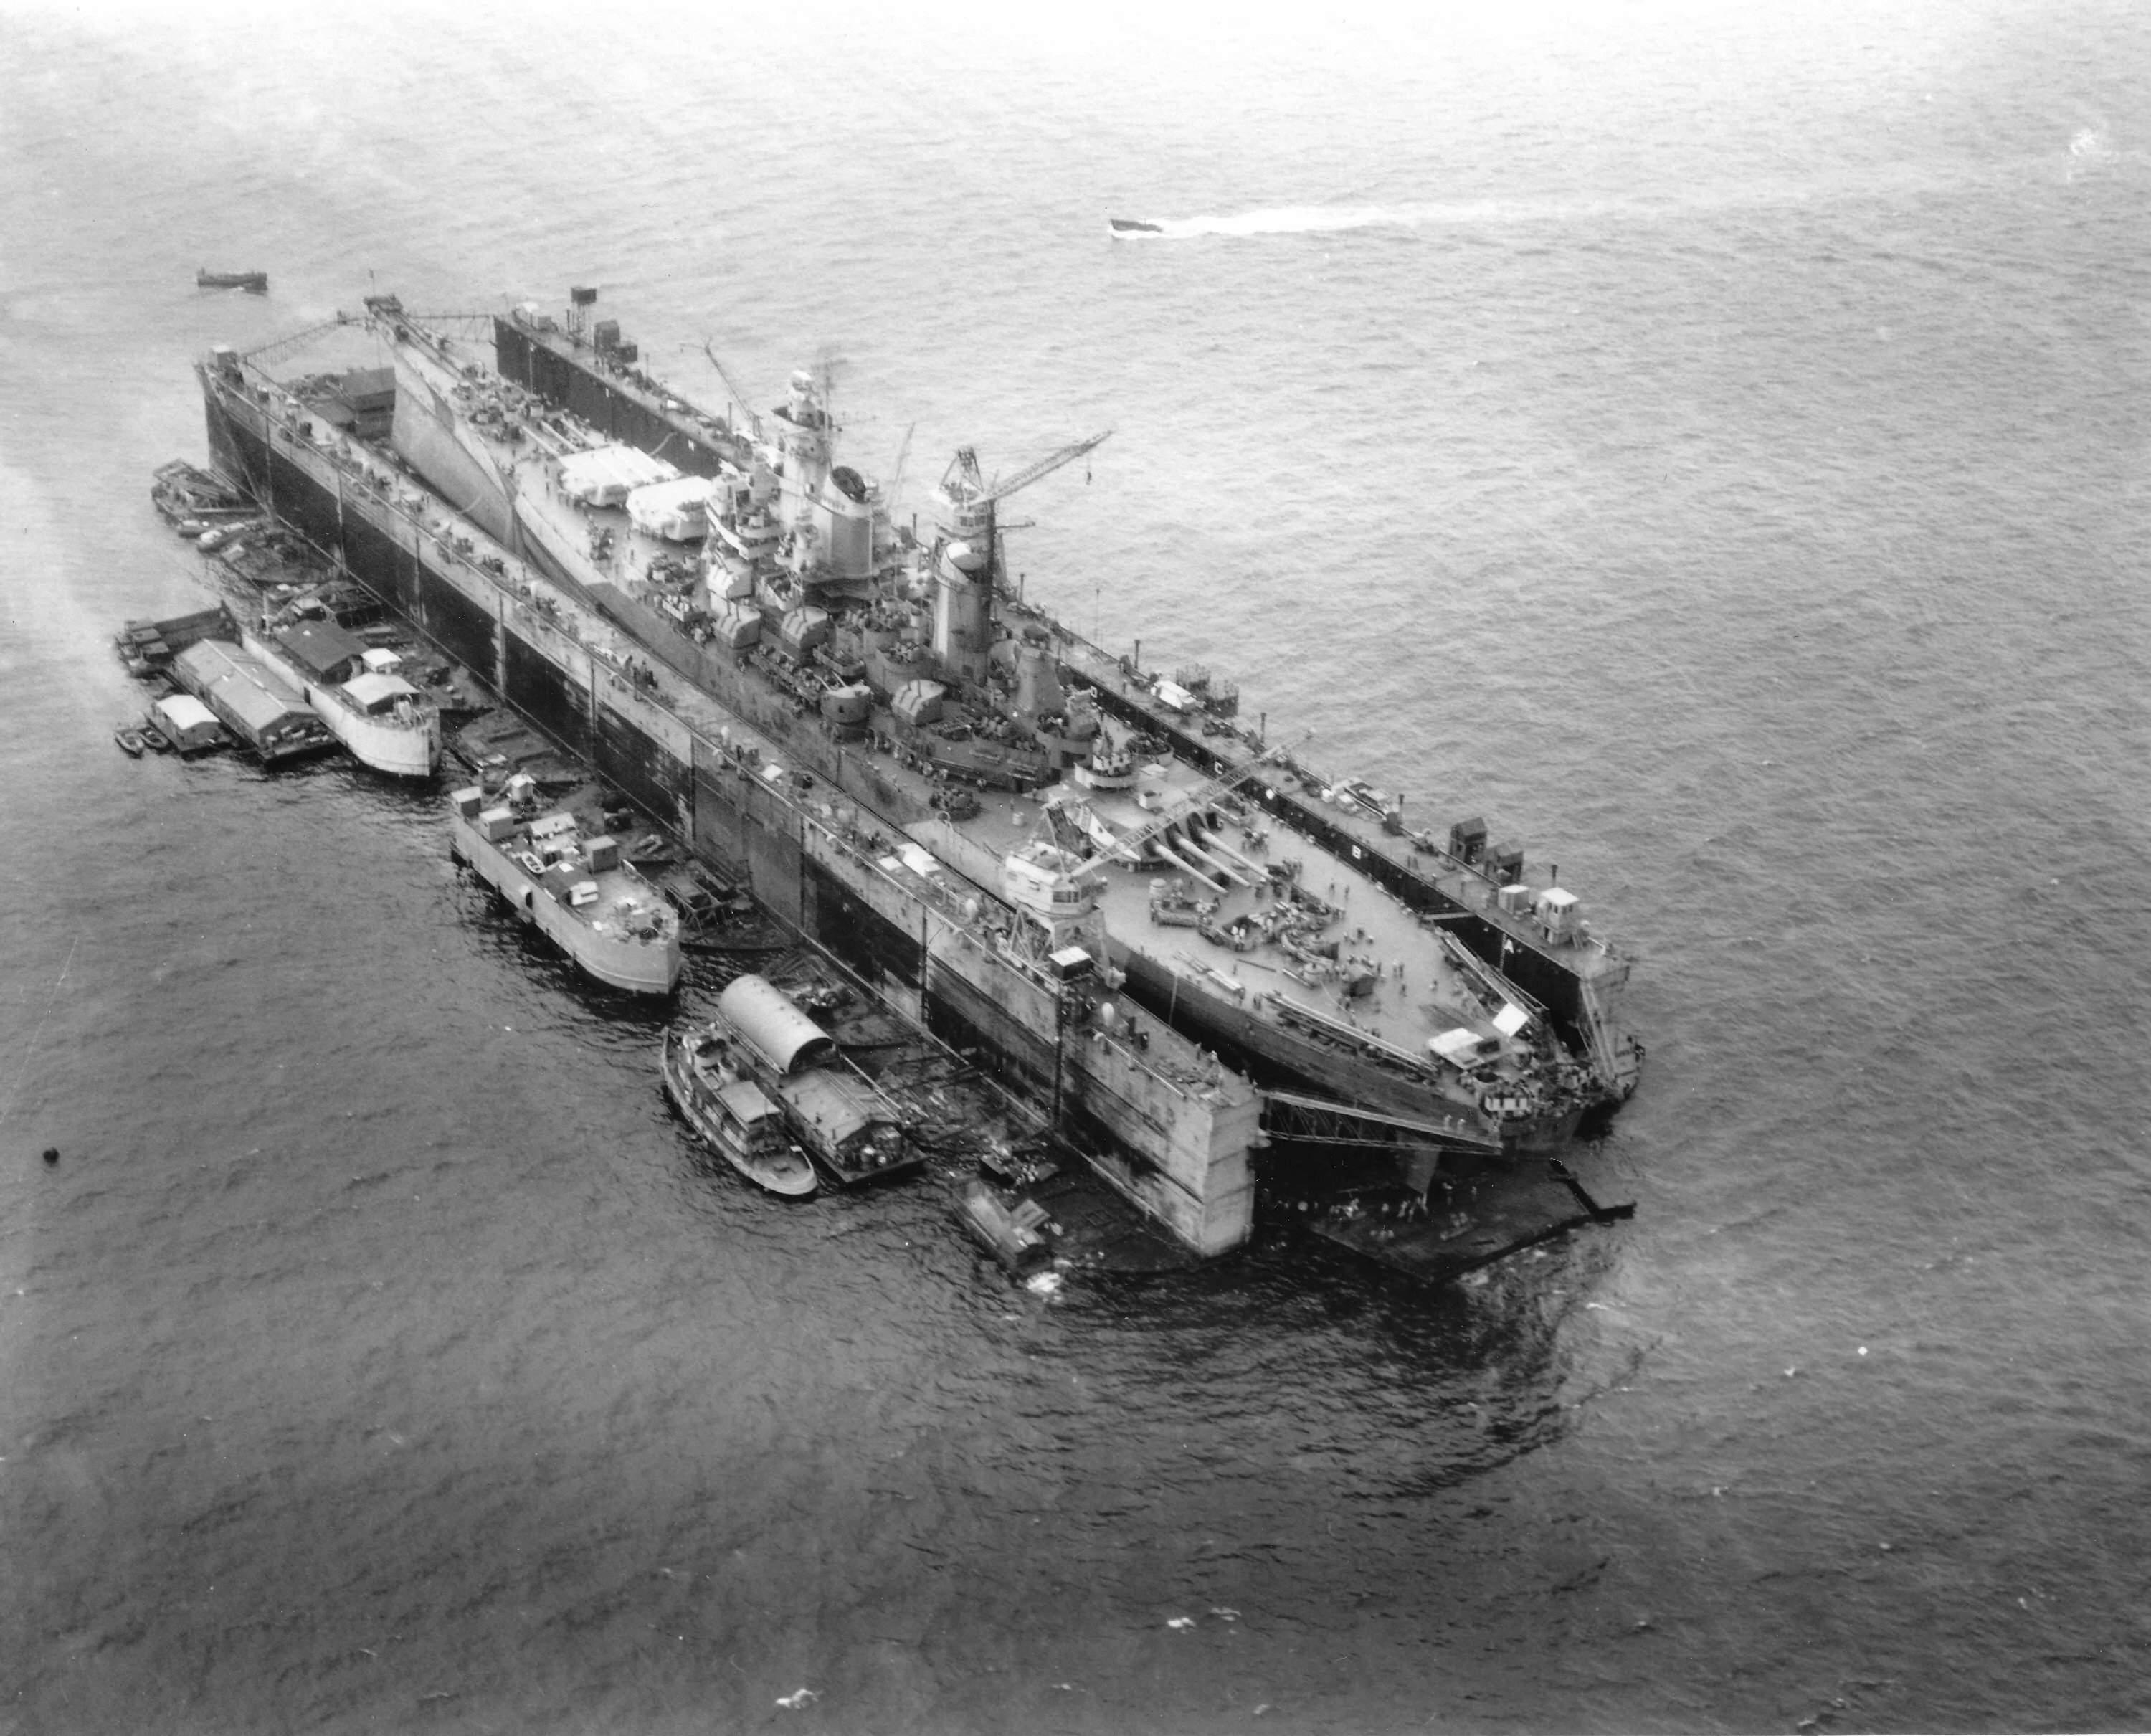 USS Iowa.jpg